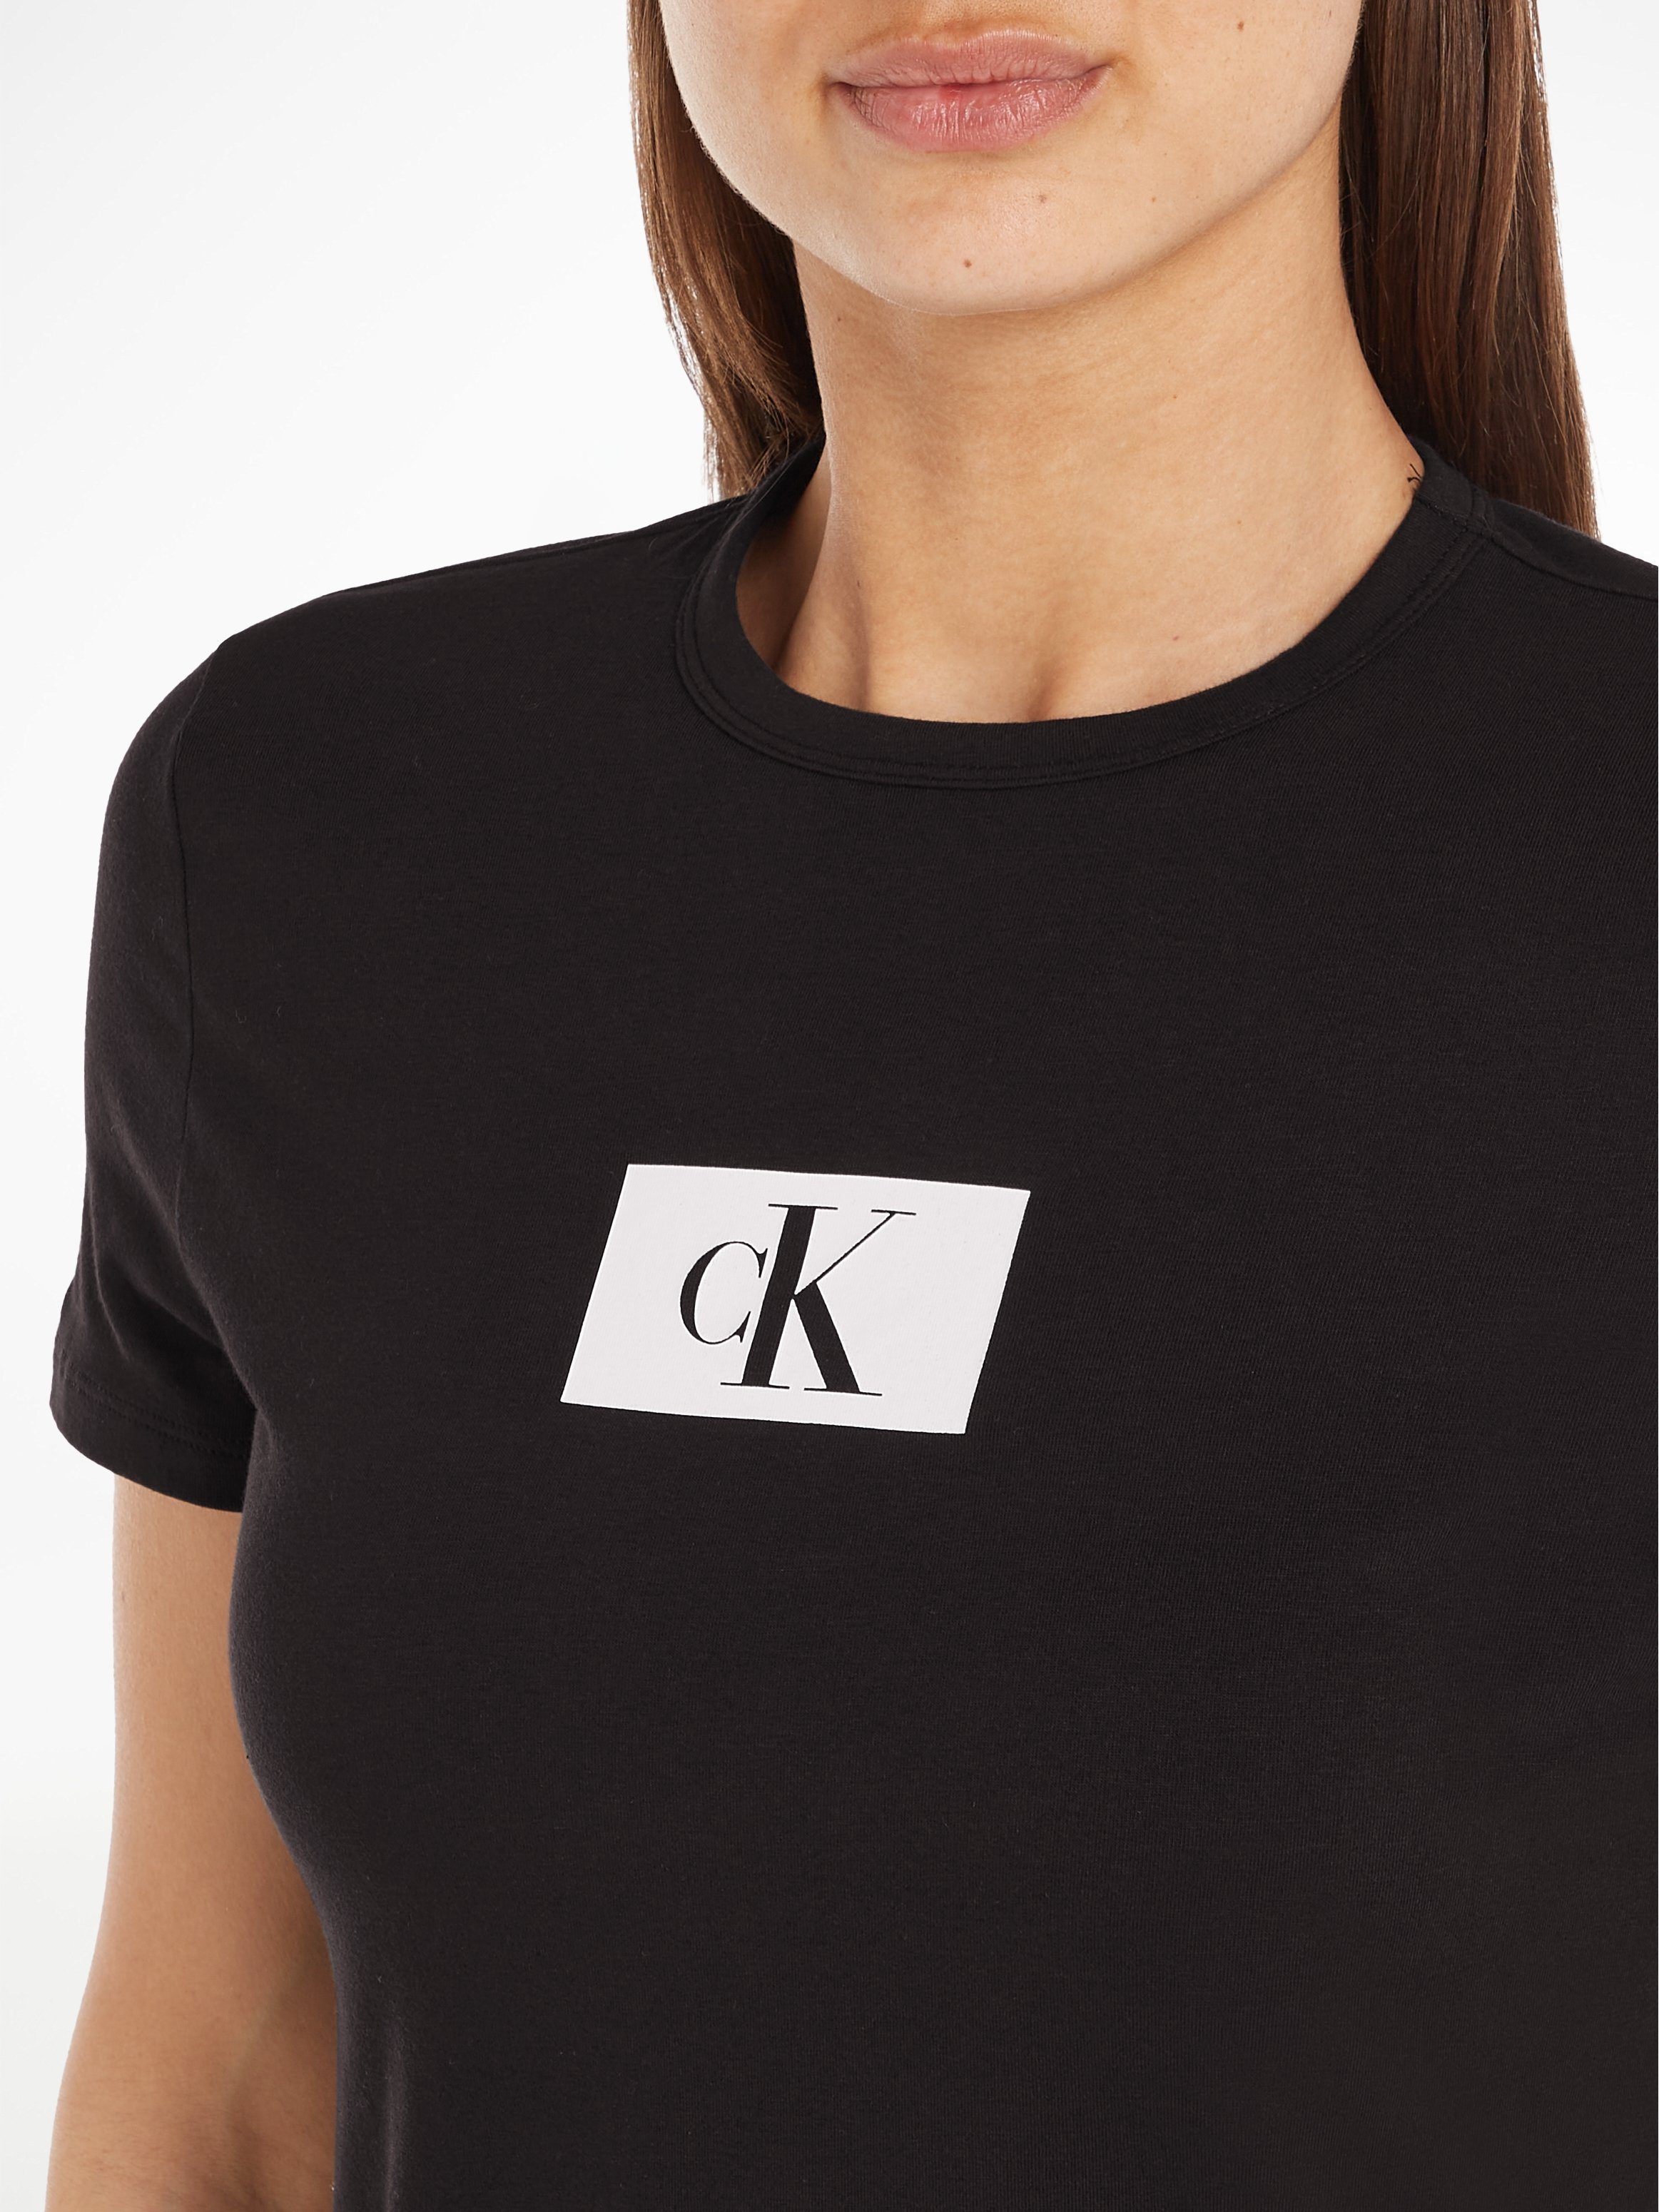 CREW BLACK S/S Kurzarmshirt Calvin Klein NECK Underwear